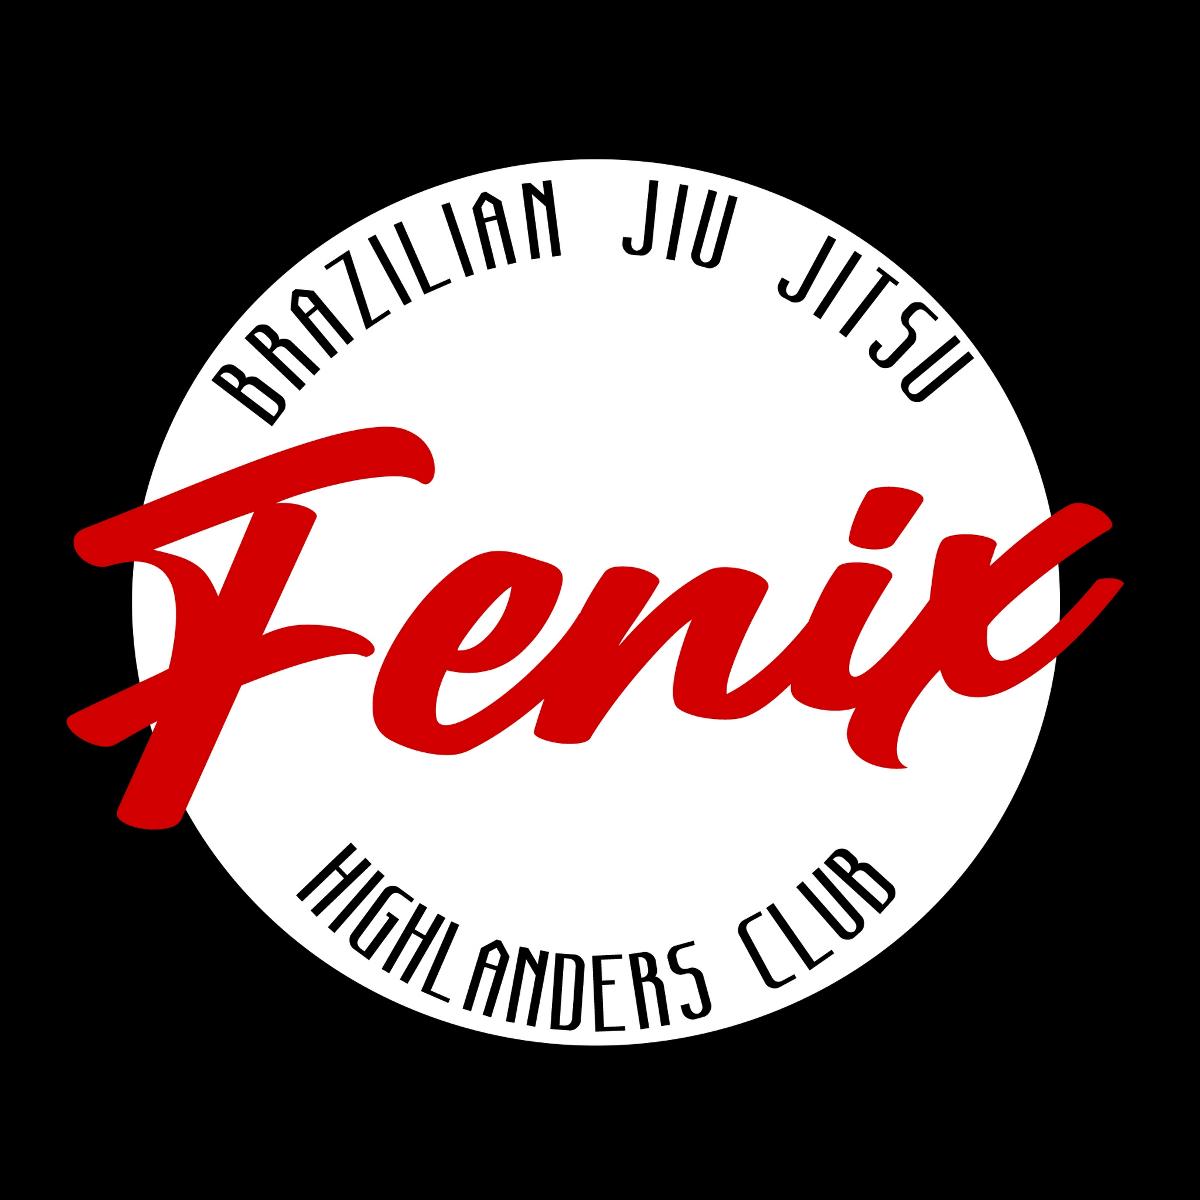 Fenix Highlanders Club